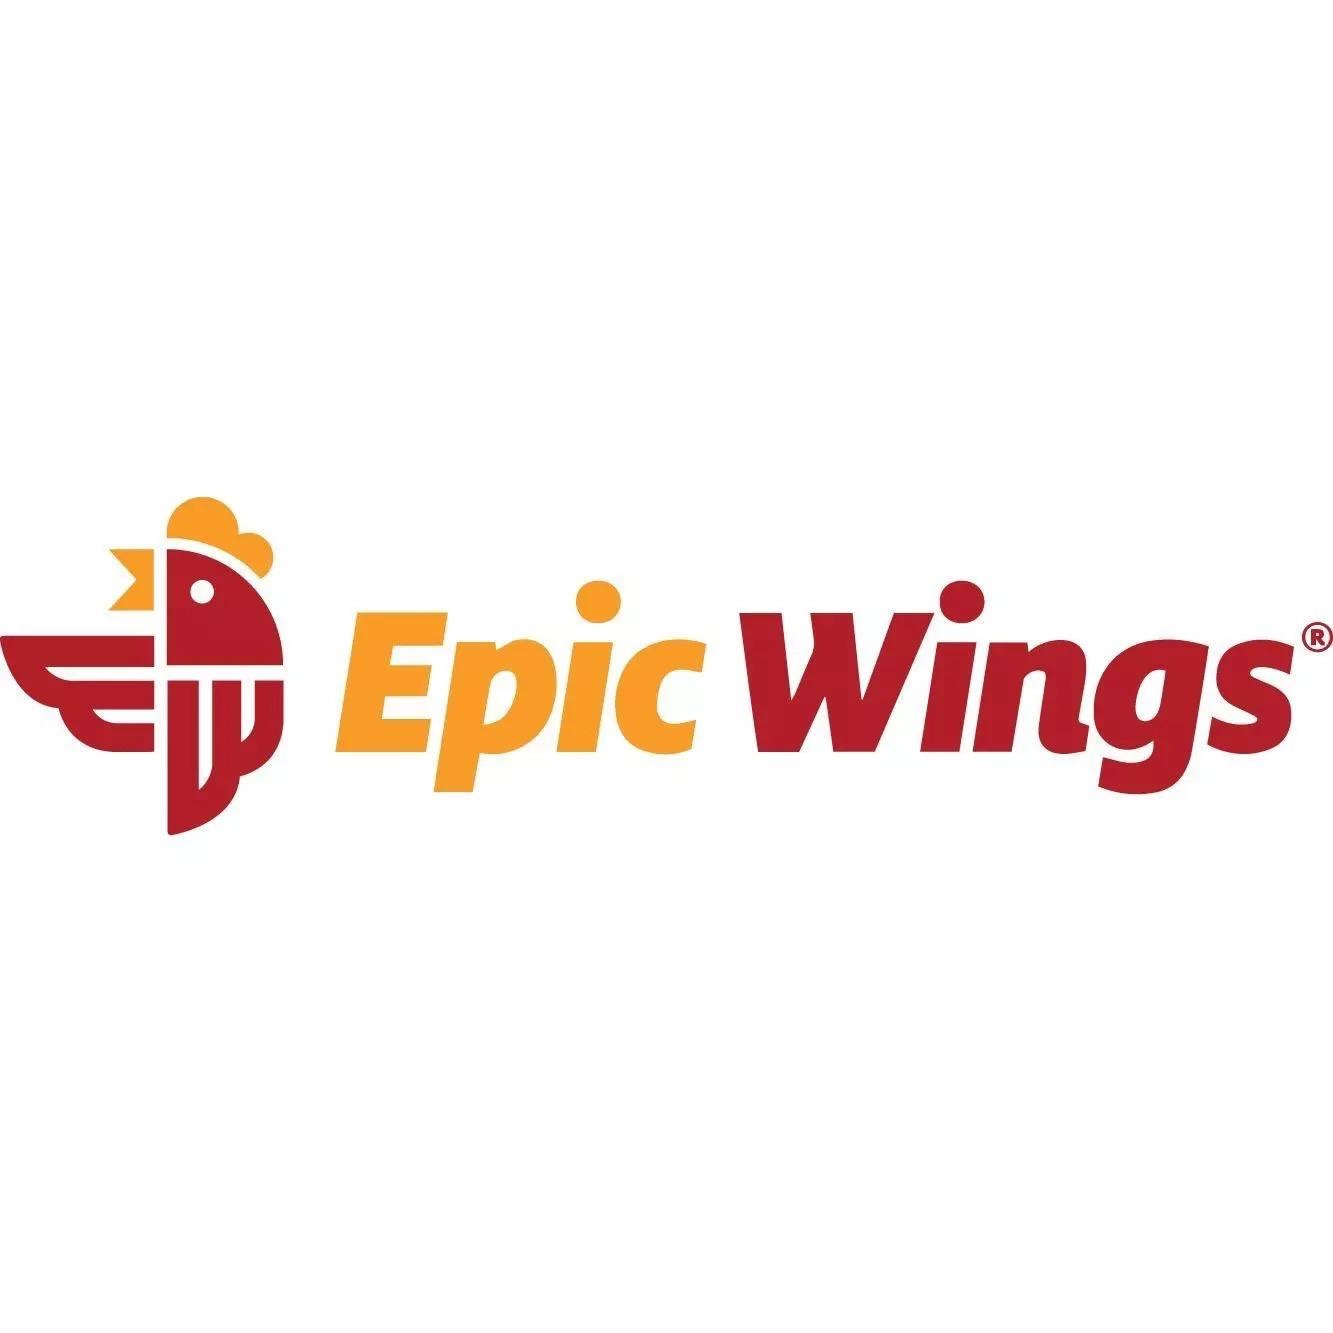 Epic Wings - COMING SOON